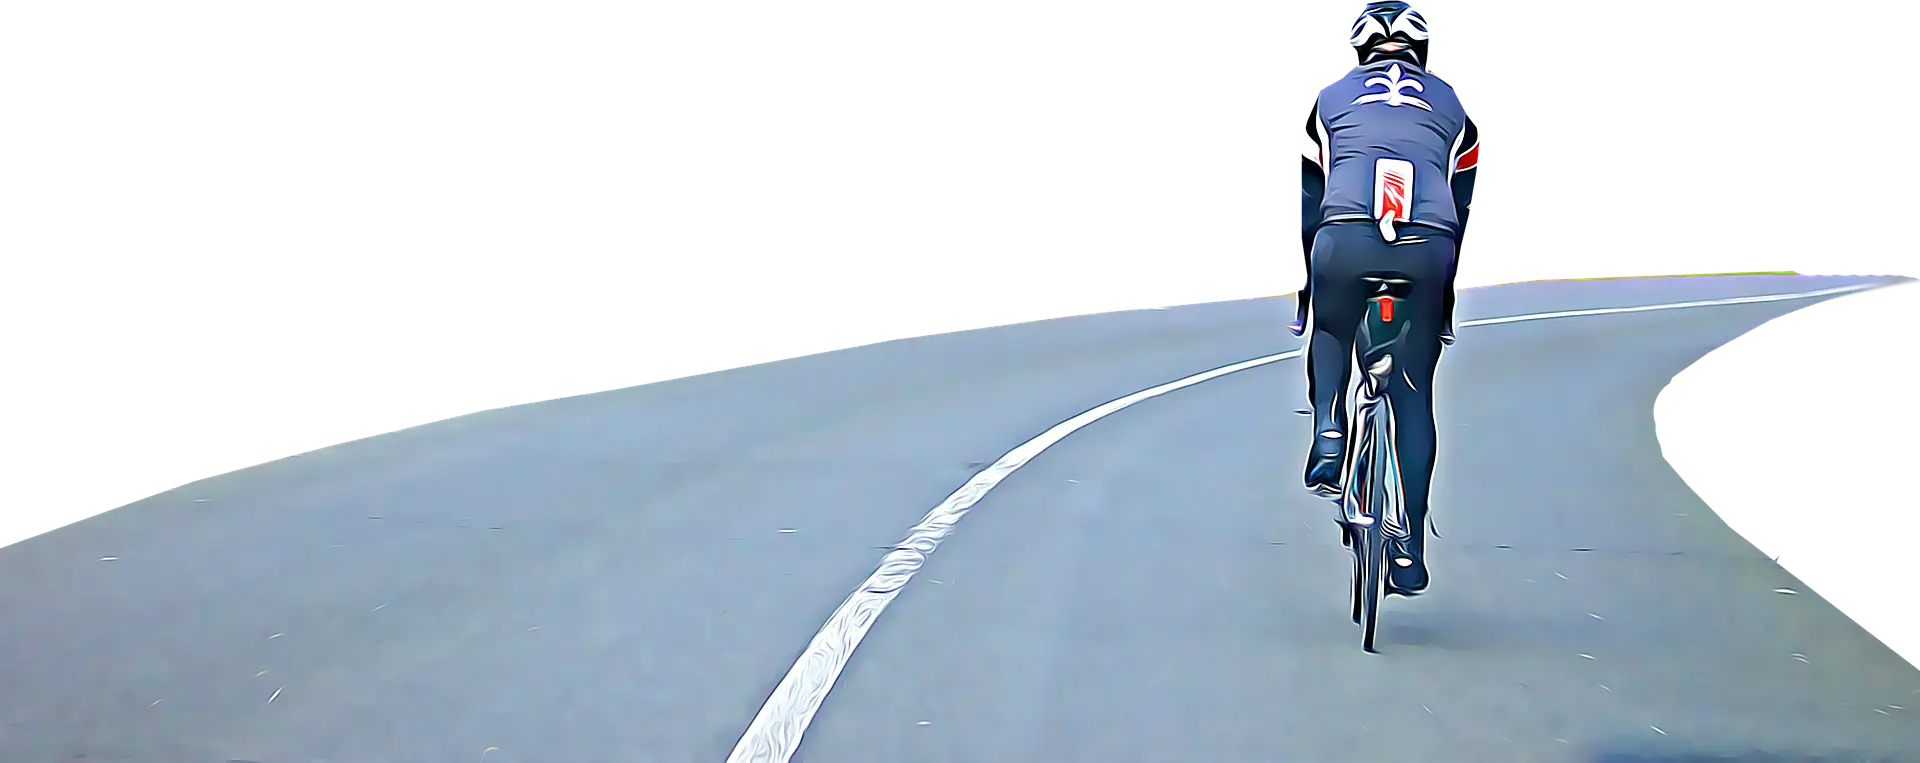 헬멧을-쓰고-도로에서-자전거를-타는-남성